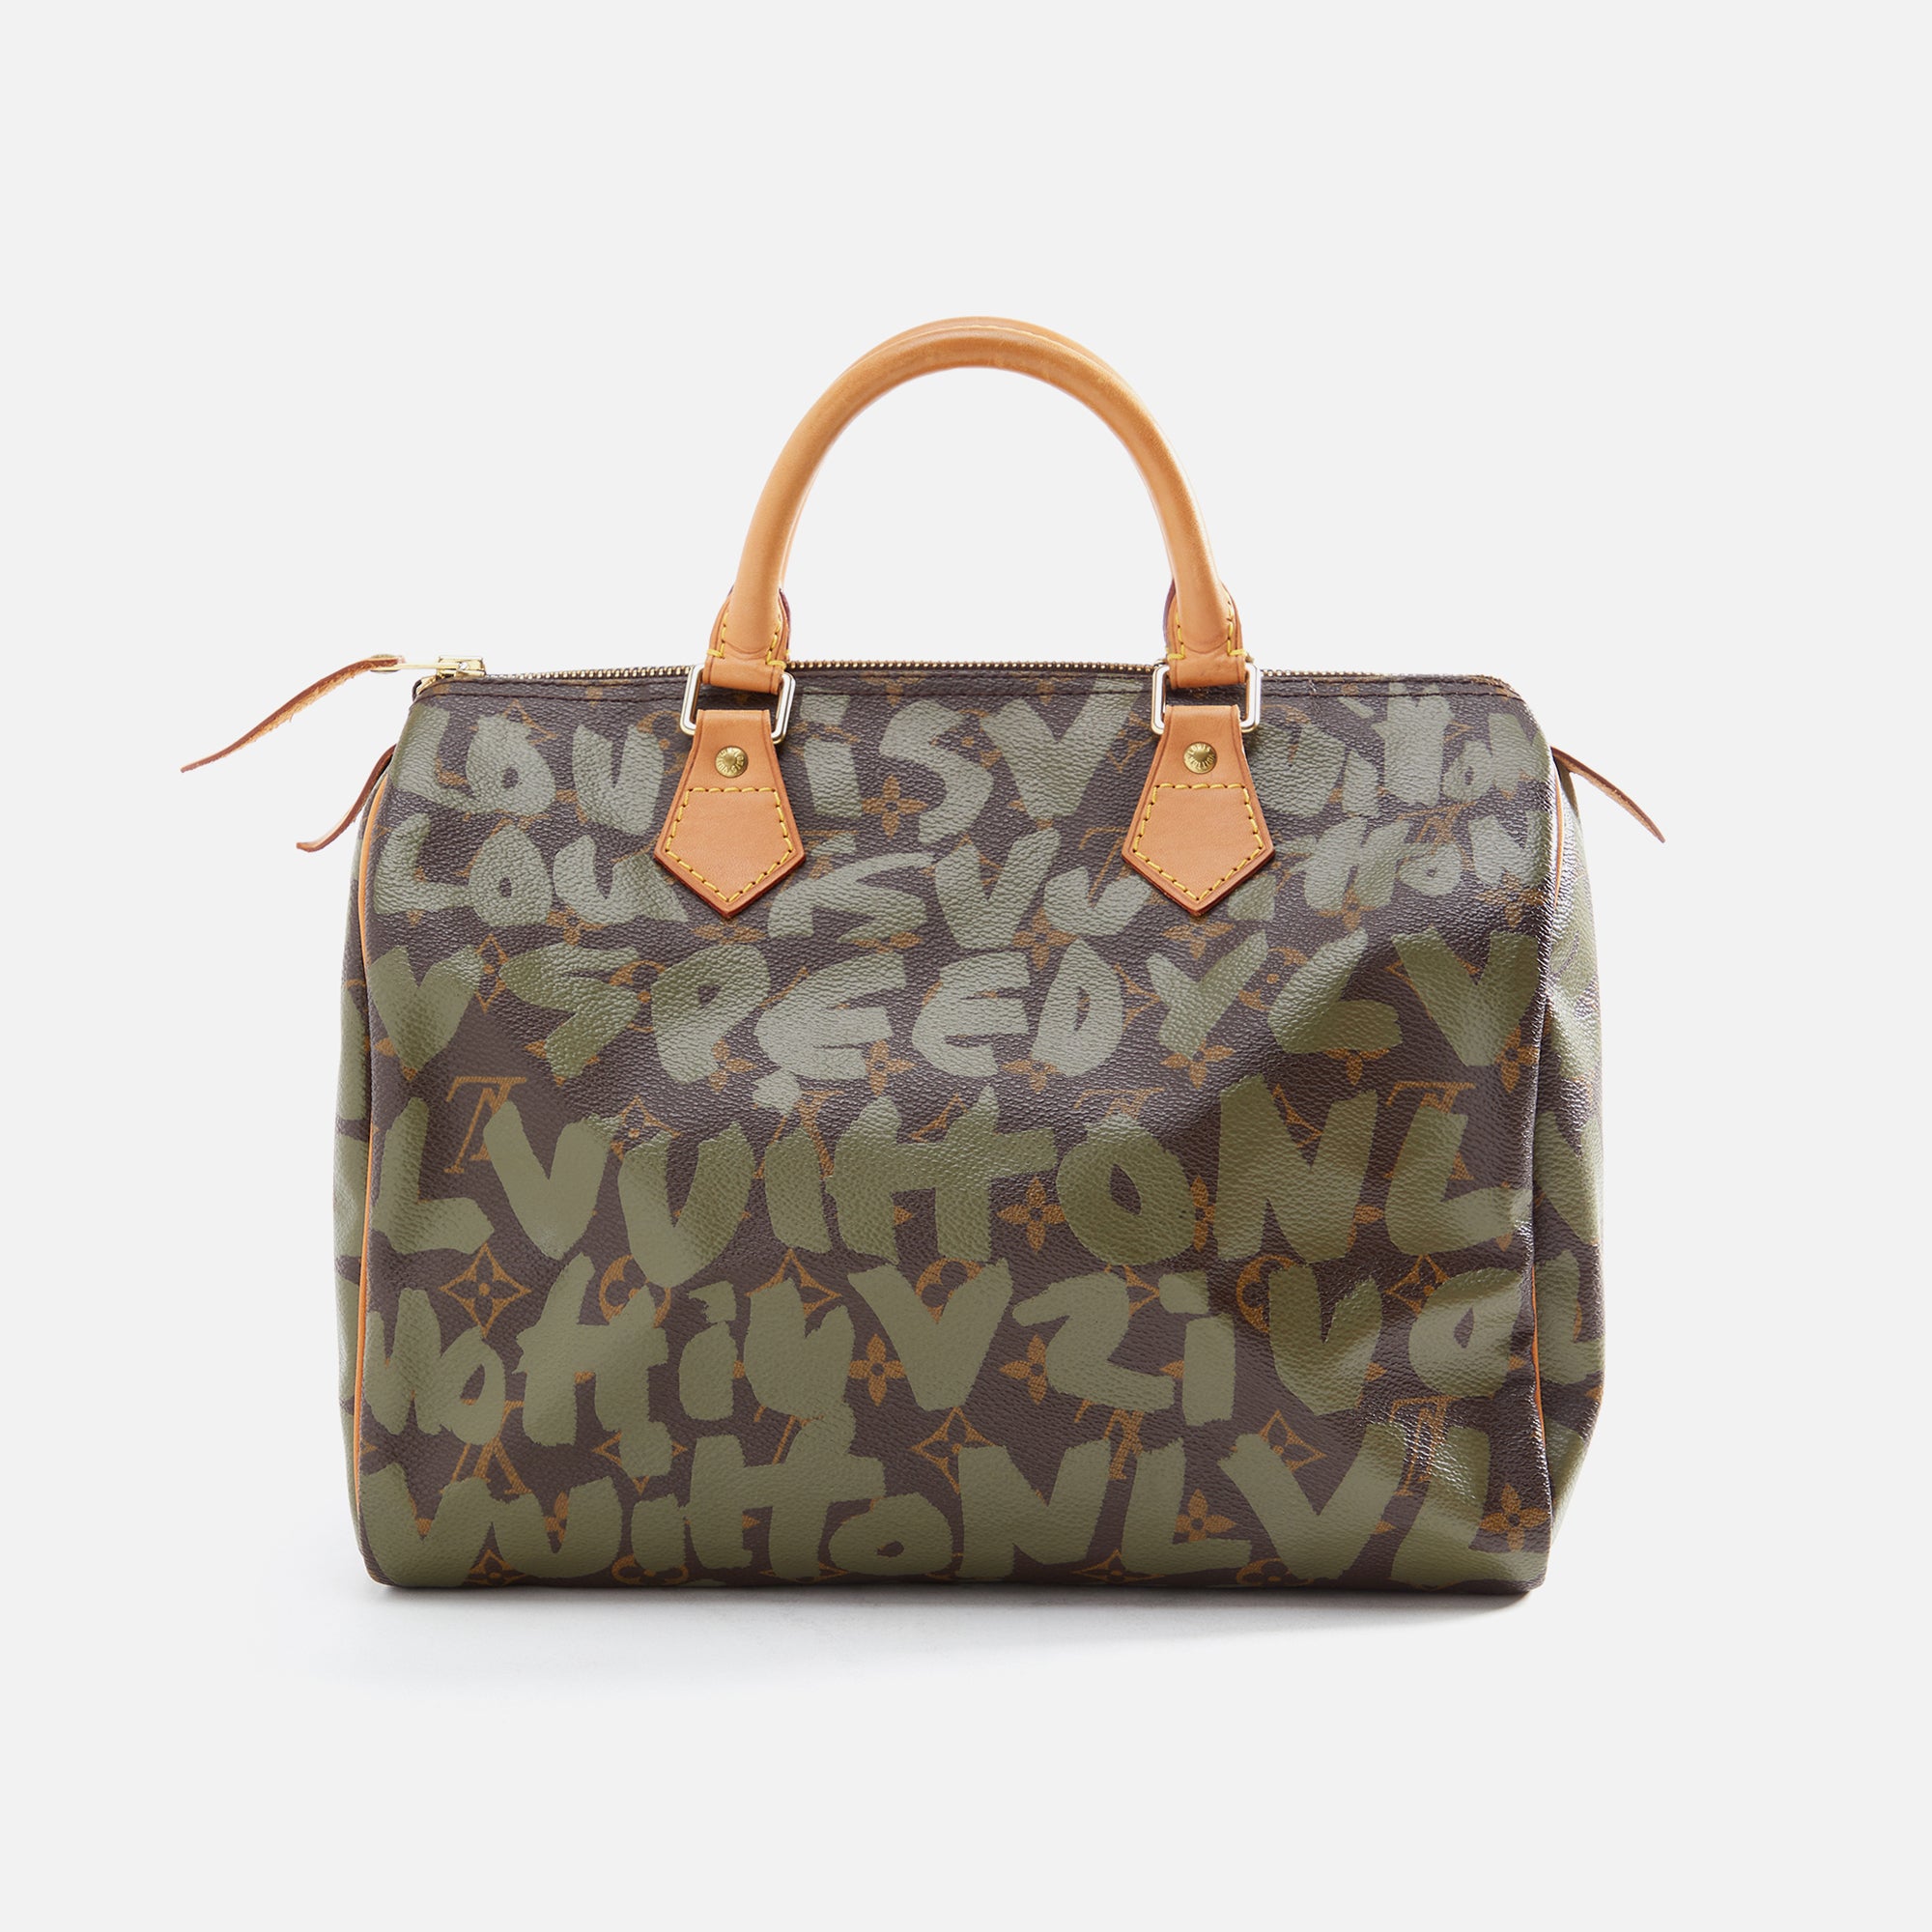 Túi xách Louis Vuitton Speedy 25 siêu cấp màu nâu họa tiết size 25 cm   M41113